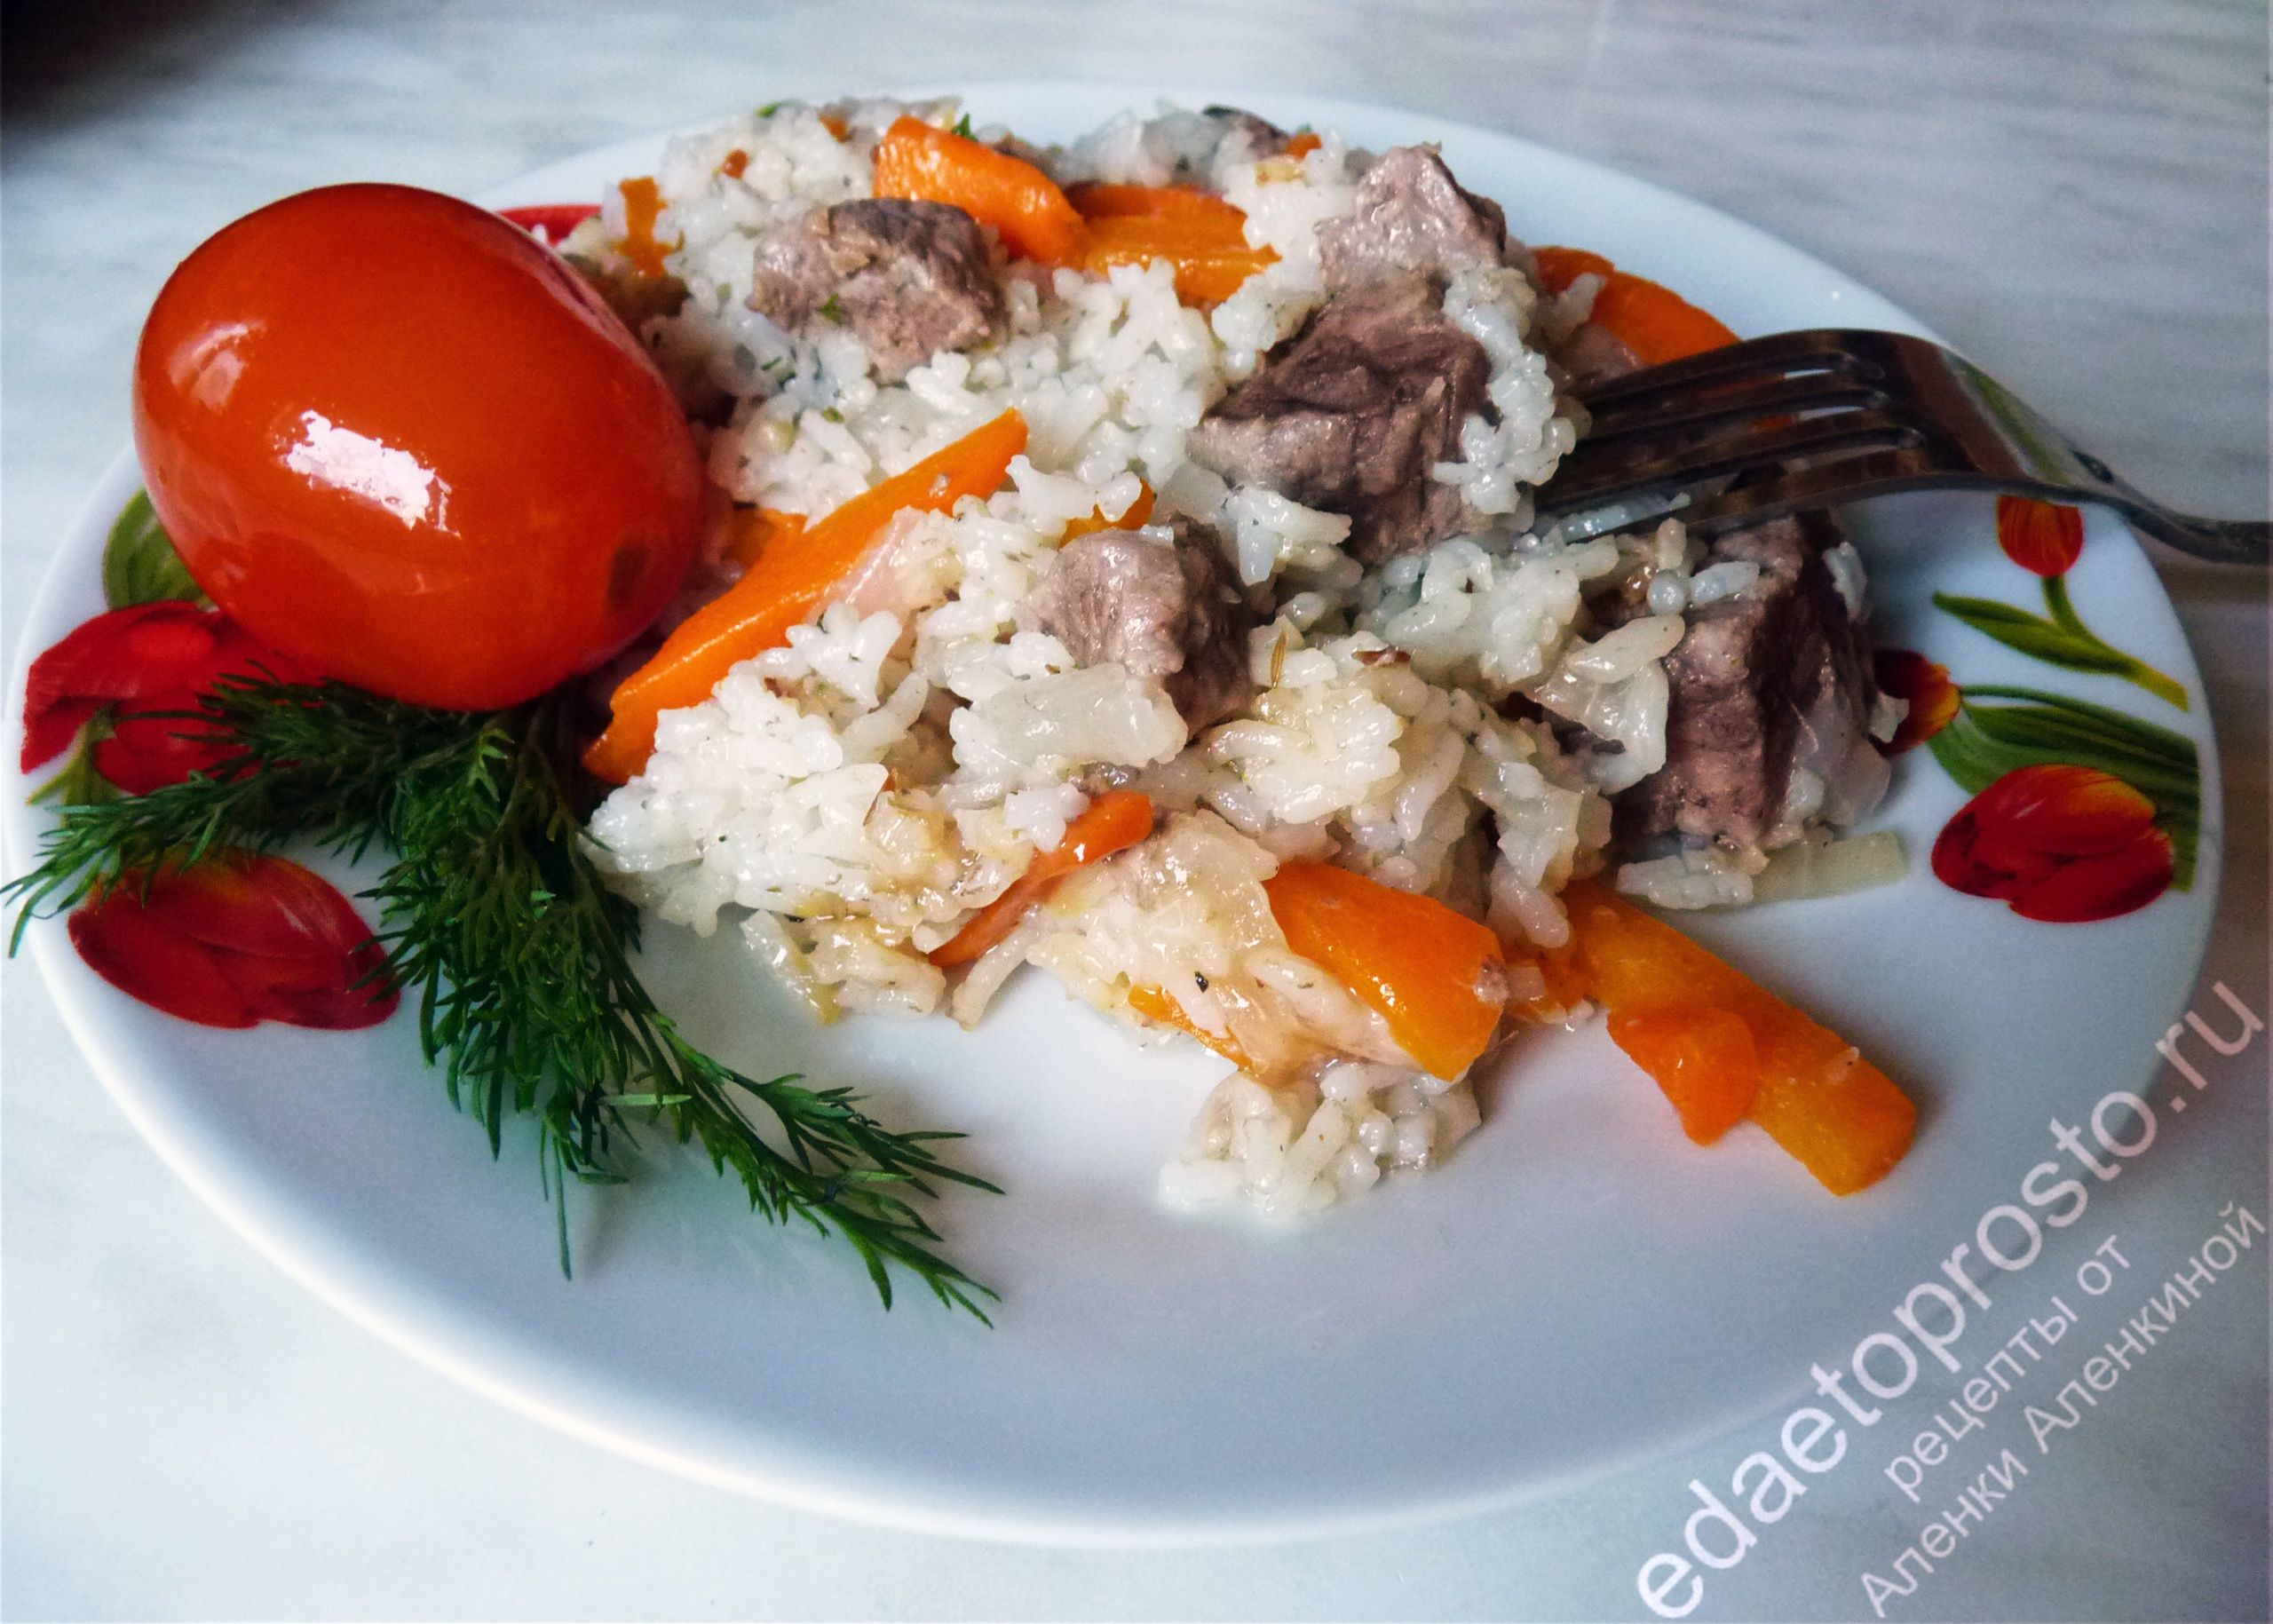 фото мяса с рисом,  красивое фото мясного блюда